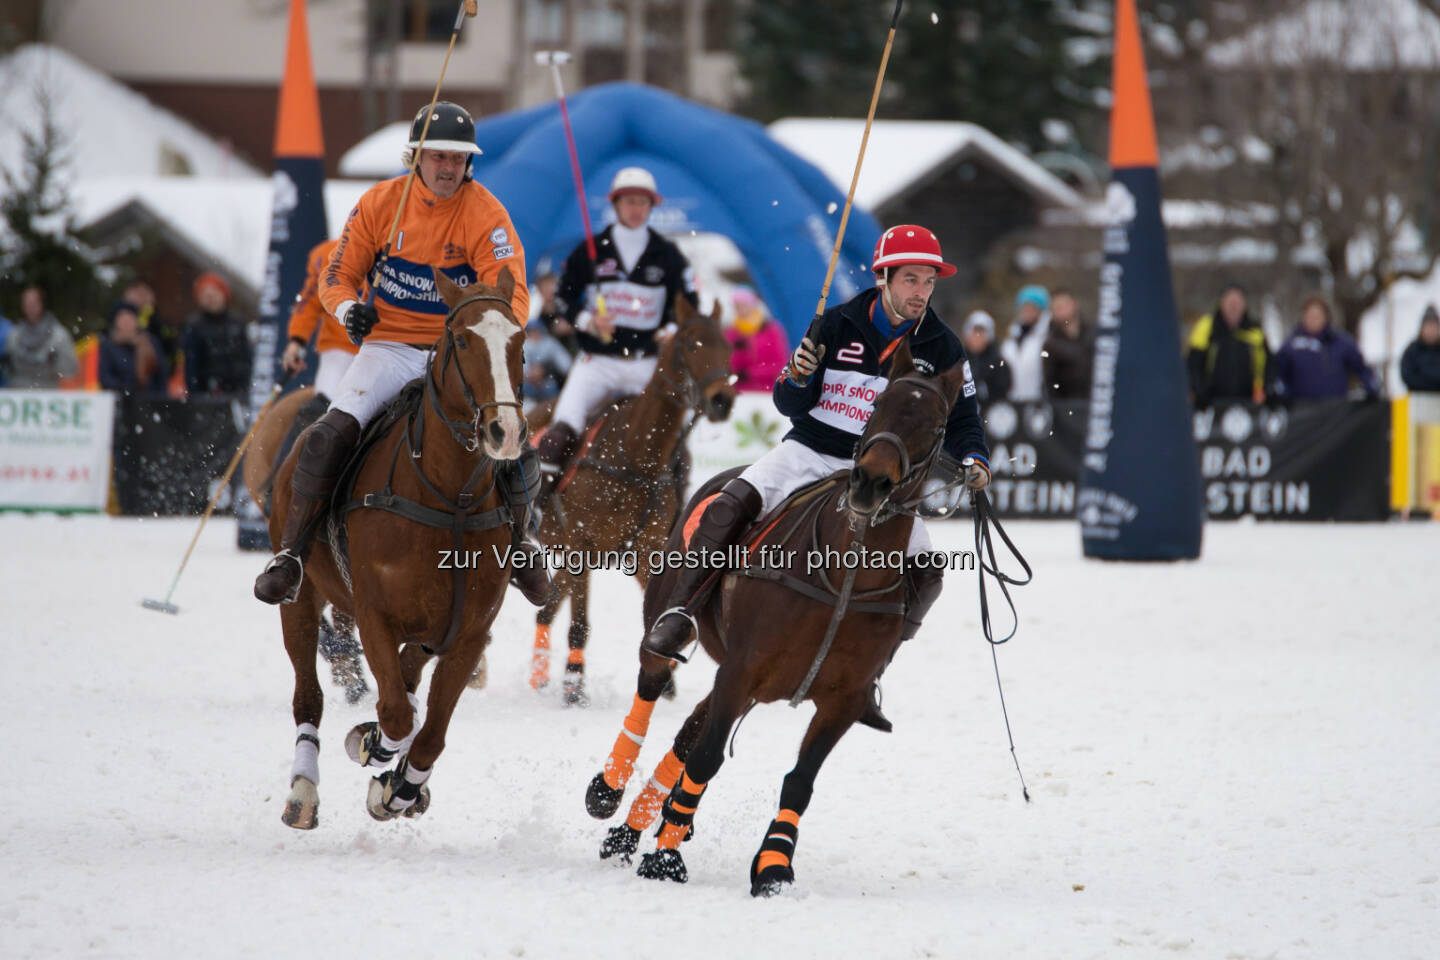 Hotel Europäischer Hof, Bad Gastein (offizielles Turnierhotel) : Snow Polo Weltcup mit Weltpremiere in Bad Gastein : Fotocredit: pipa